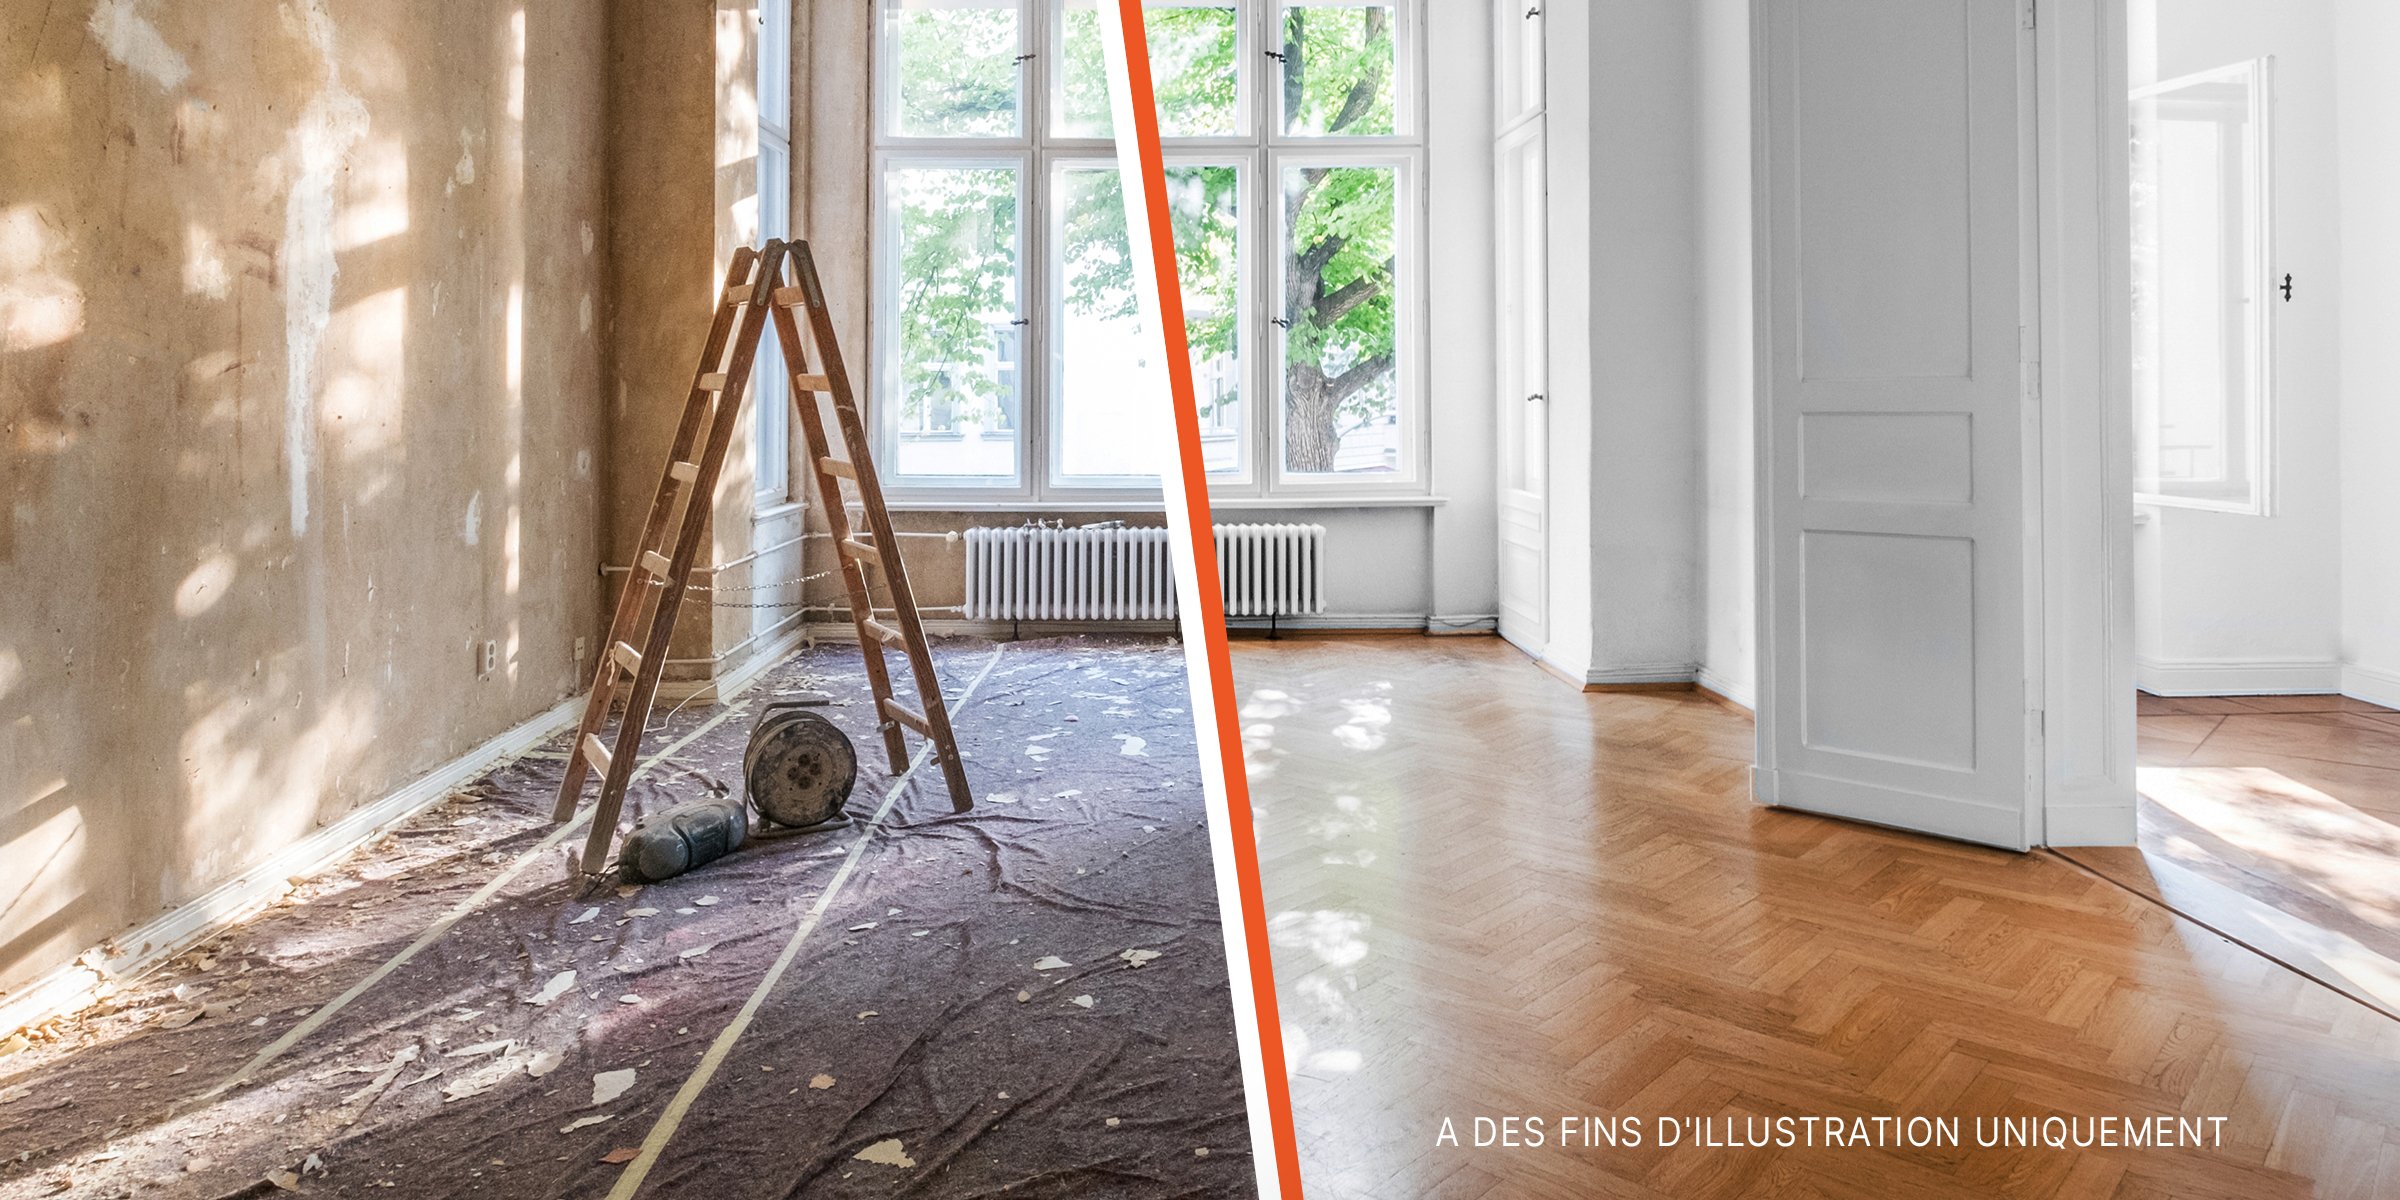 Une maison avant et après rénovation | Source : Shutterstock | Getty Images 